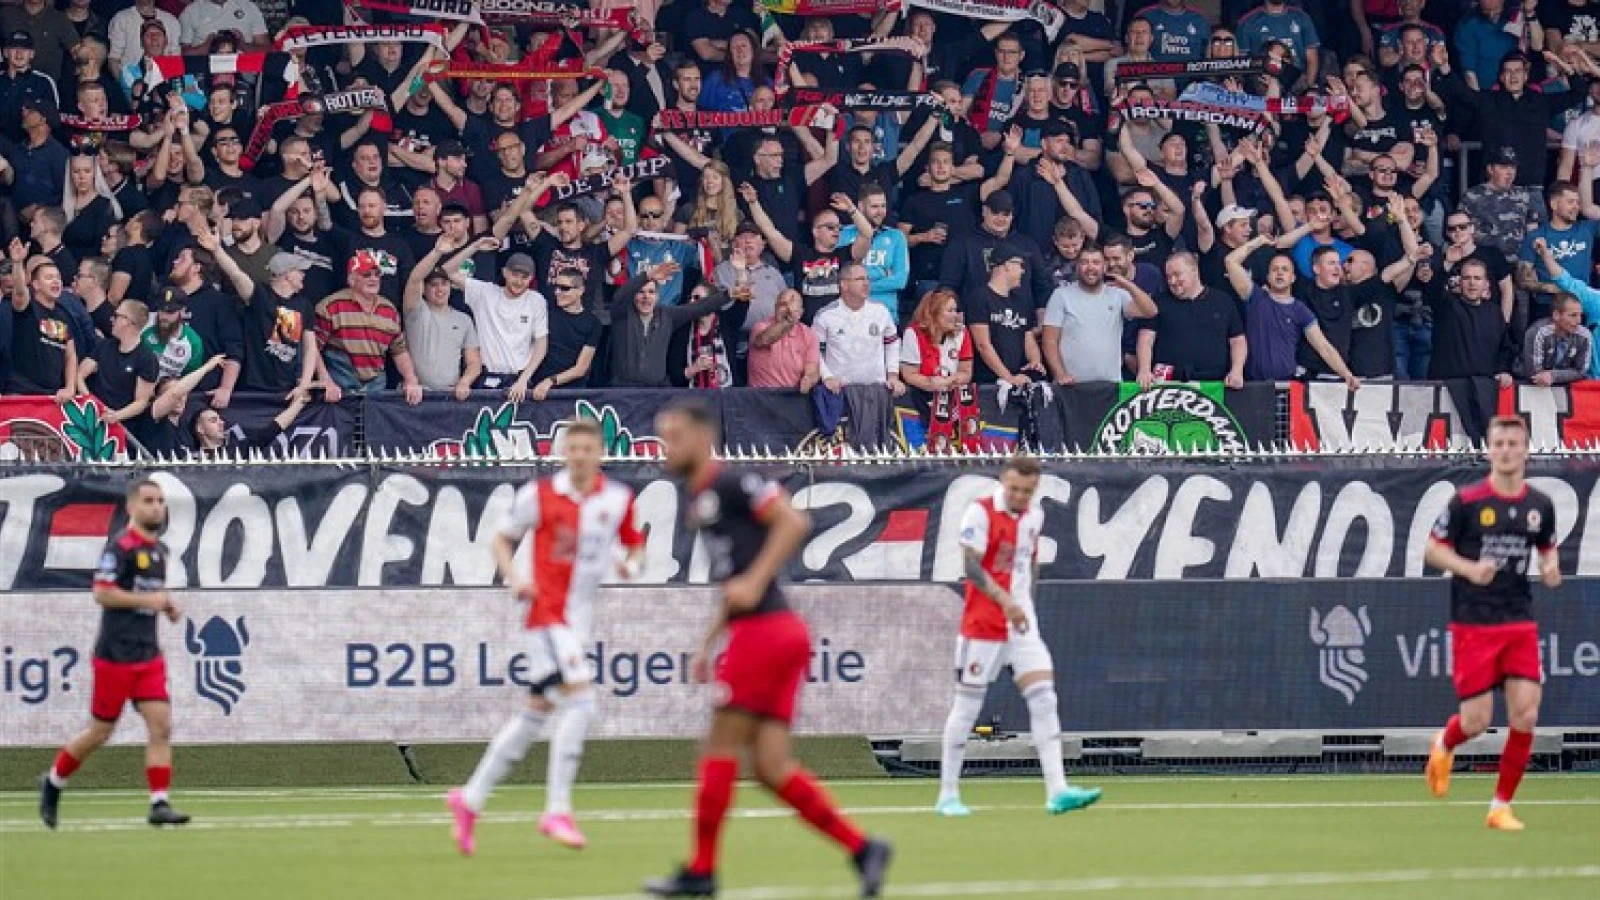 VIDEO | Feyenoord deelt DERBY STORIES na overwinning op Excelsior